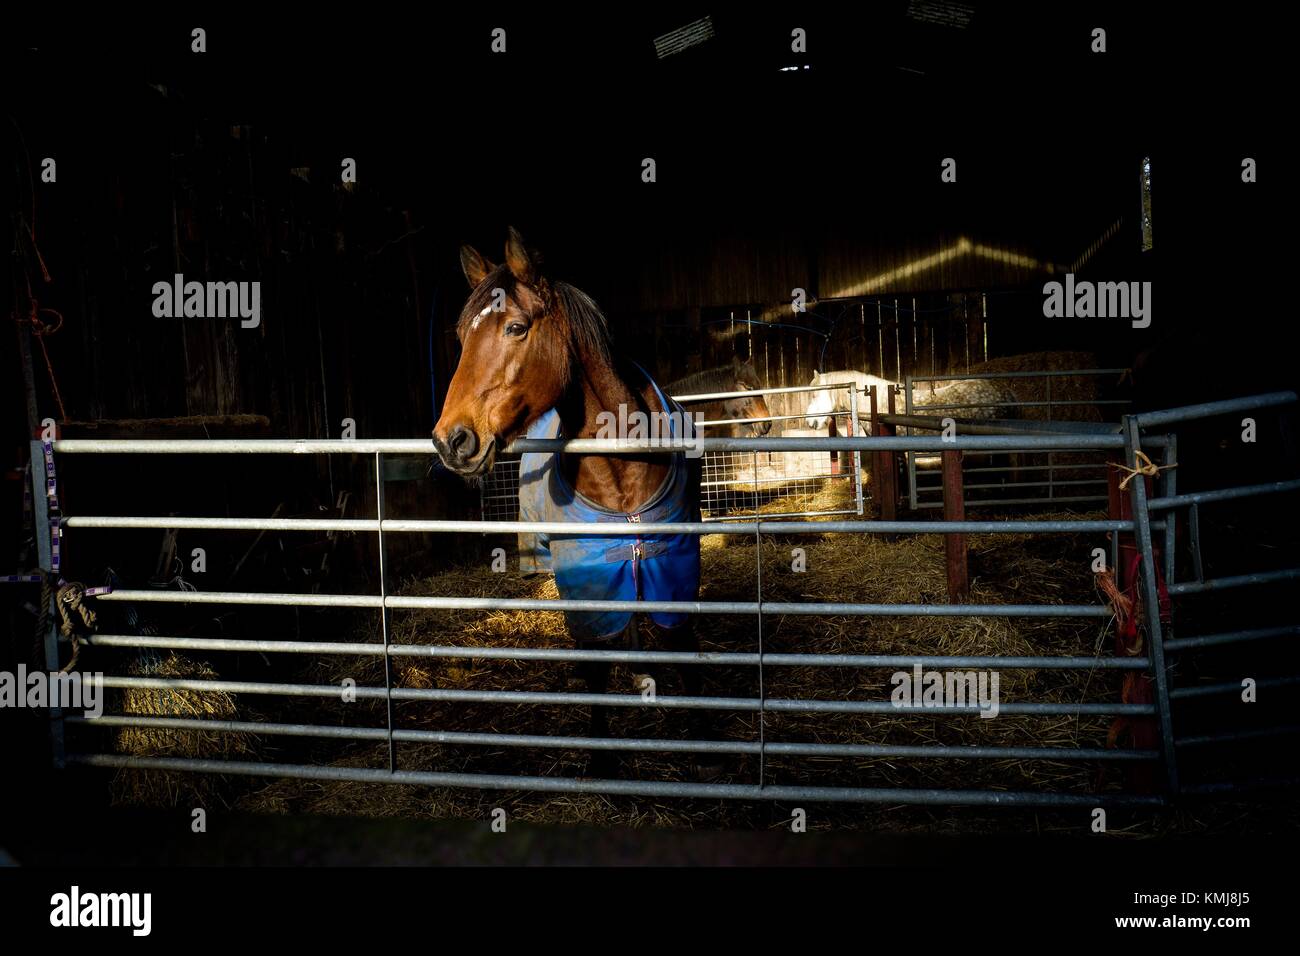 Estable con un caballo en un vestido mirando a través de una verja de hierro. Conistone Skipton, North Yorkshire, Inglaterra, Reino Unido. Foto de stock